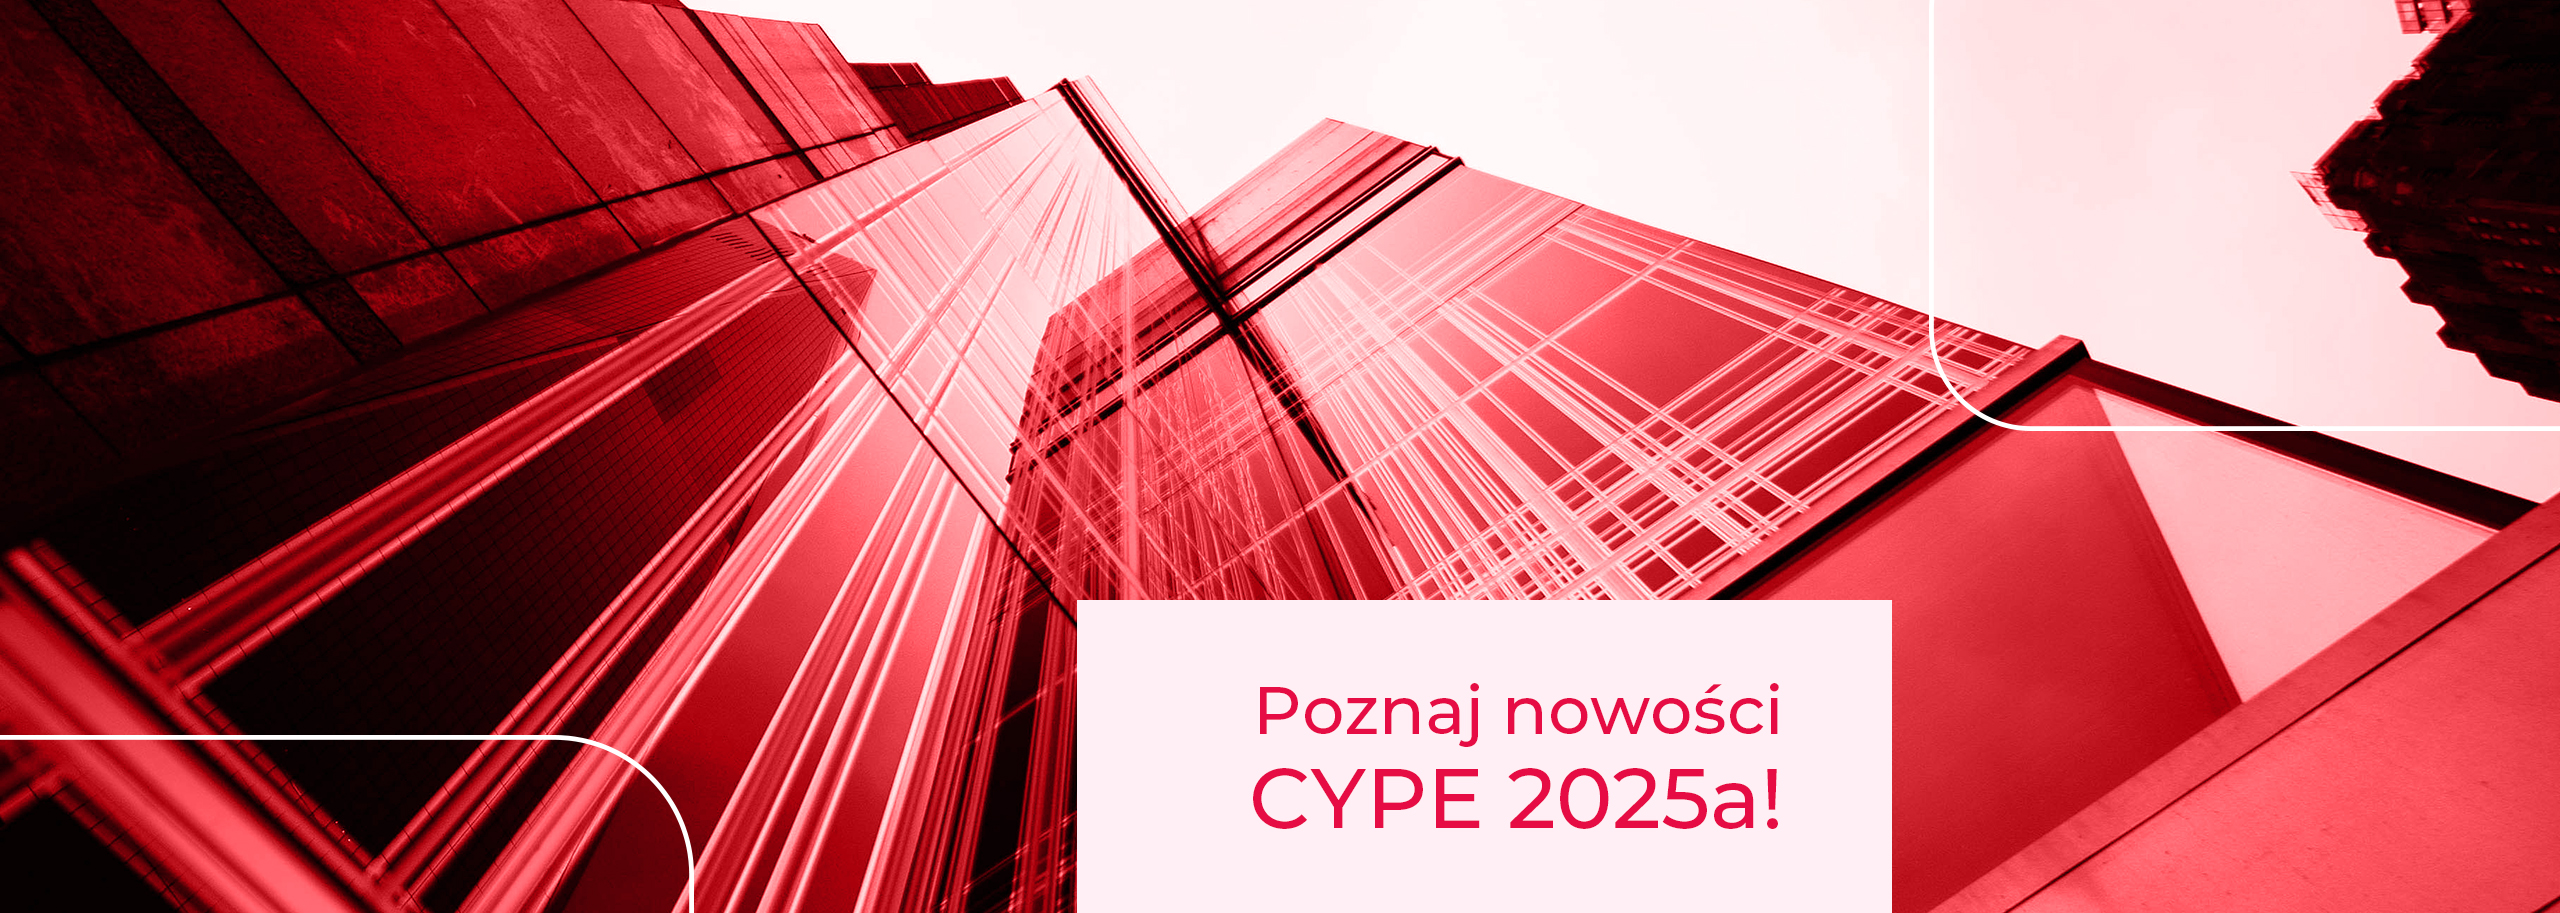 Nowości w CYPE 2025a